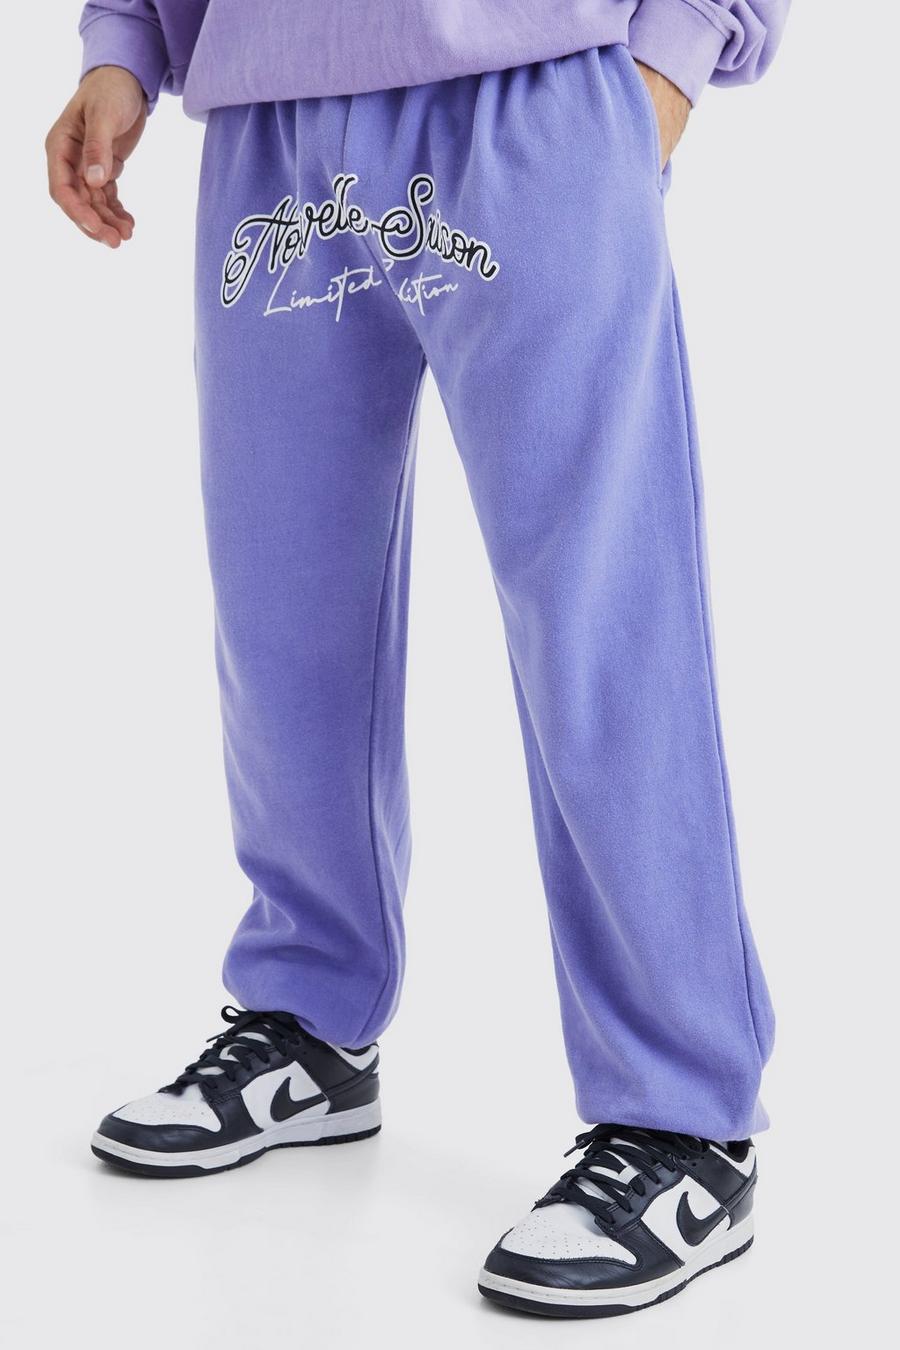 Pantalón deportivo oversize con estampado gráfico Nouvelle en la entrepierna, Purple